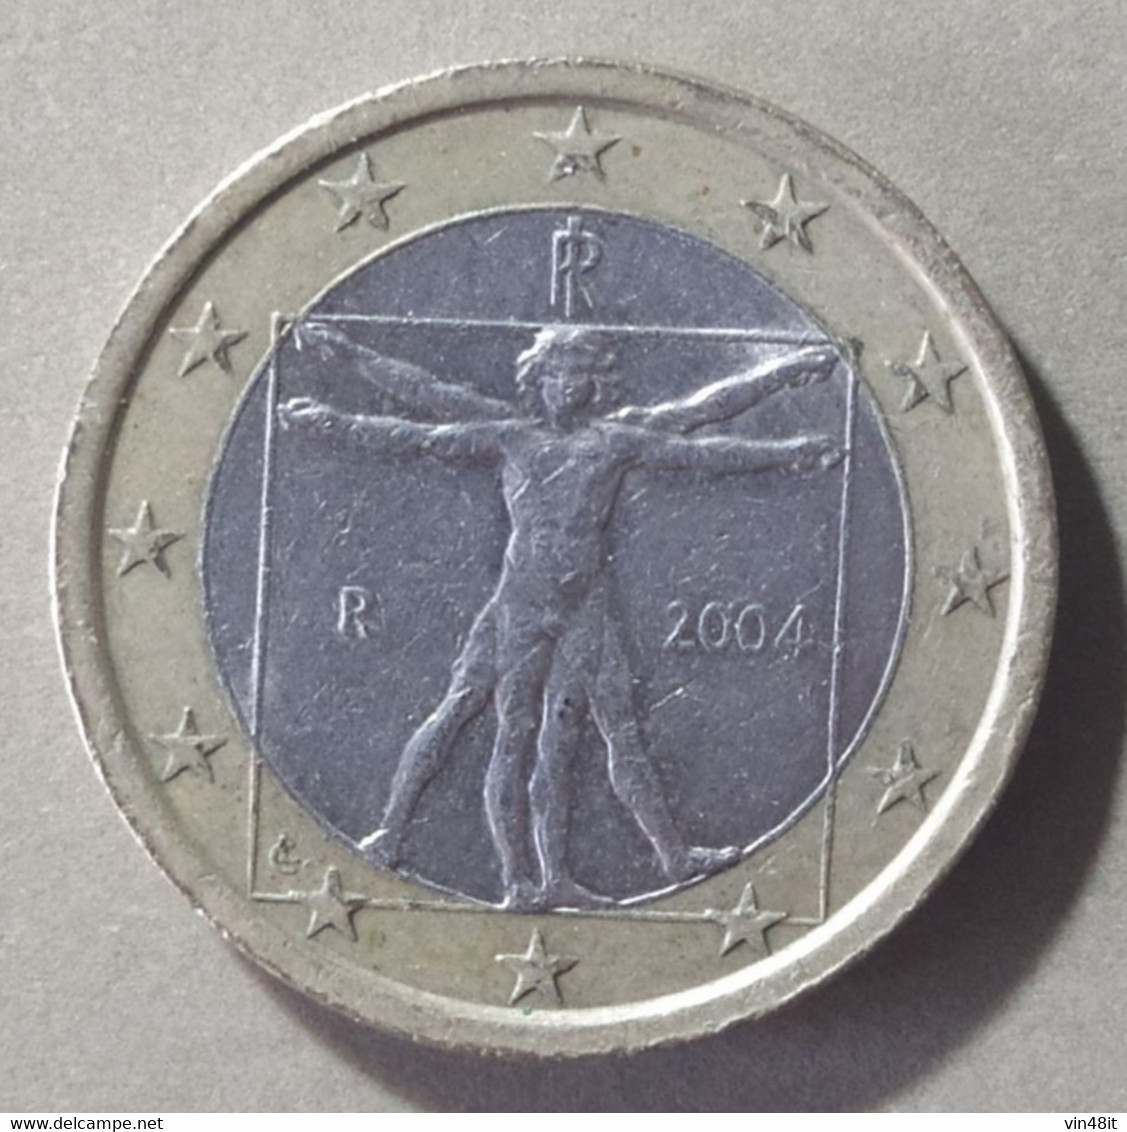 2004 - ITALIA  REPUBBLICA    -  MONETA IN EURO -  DEL VALORE DI 1,00  EURO  - USATA - - Italia